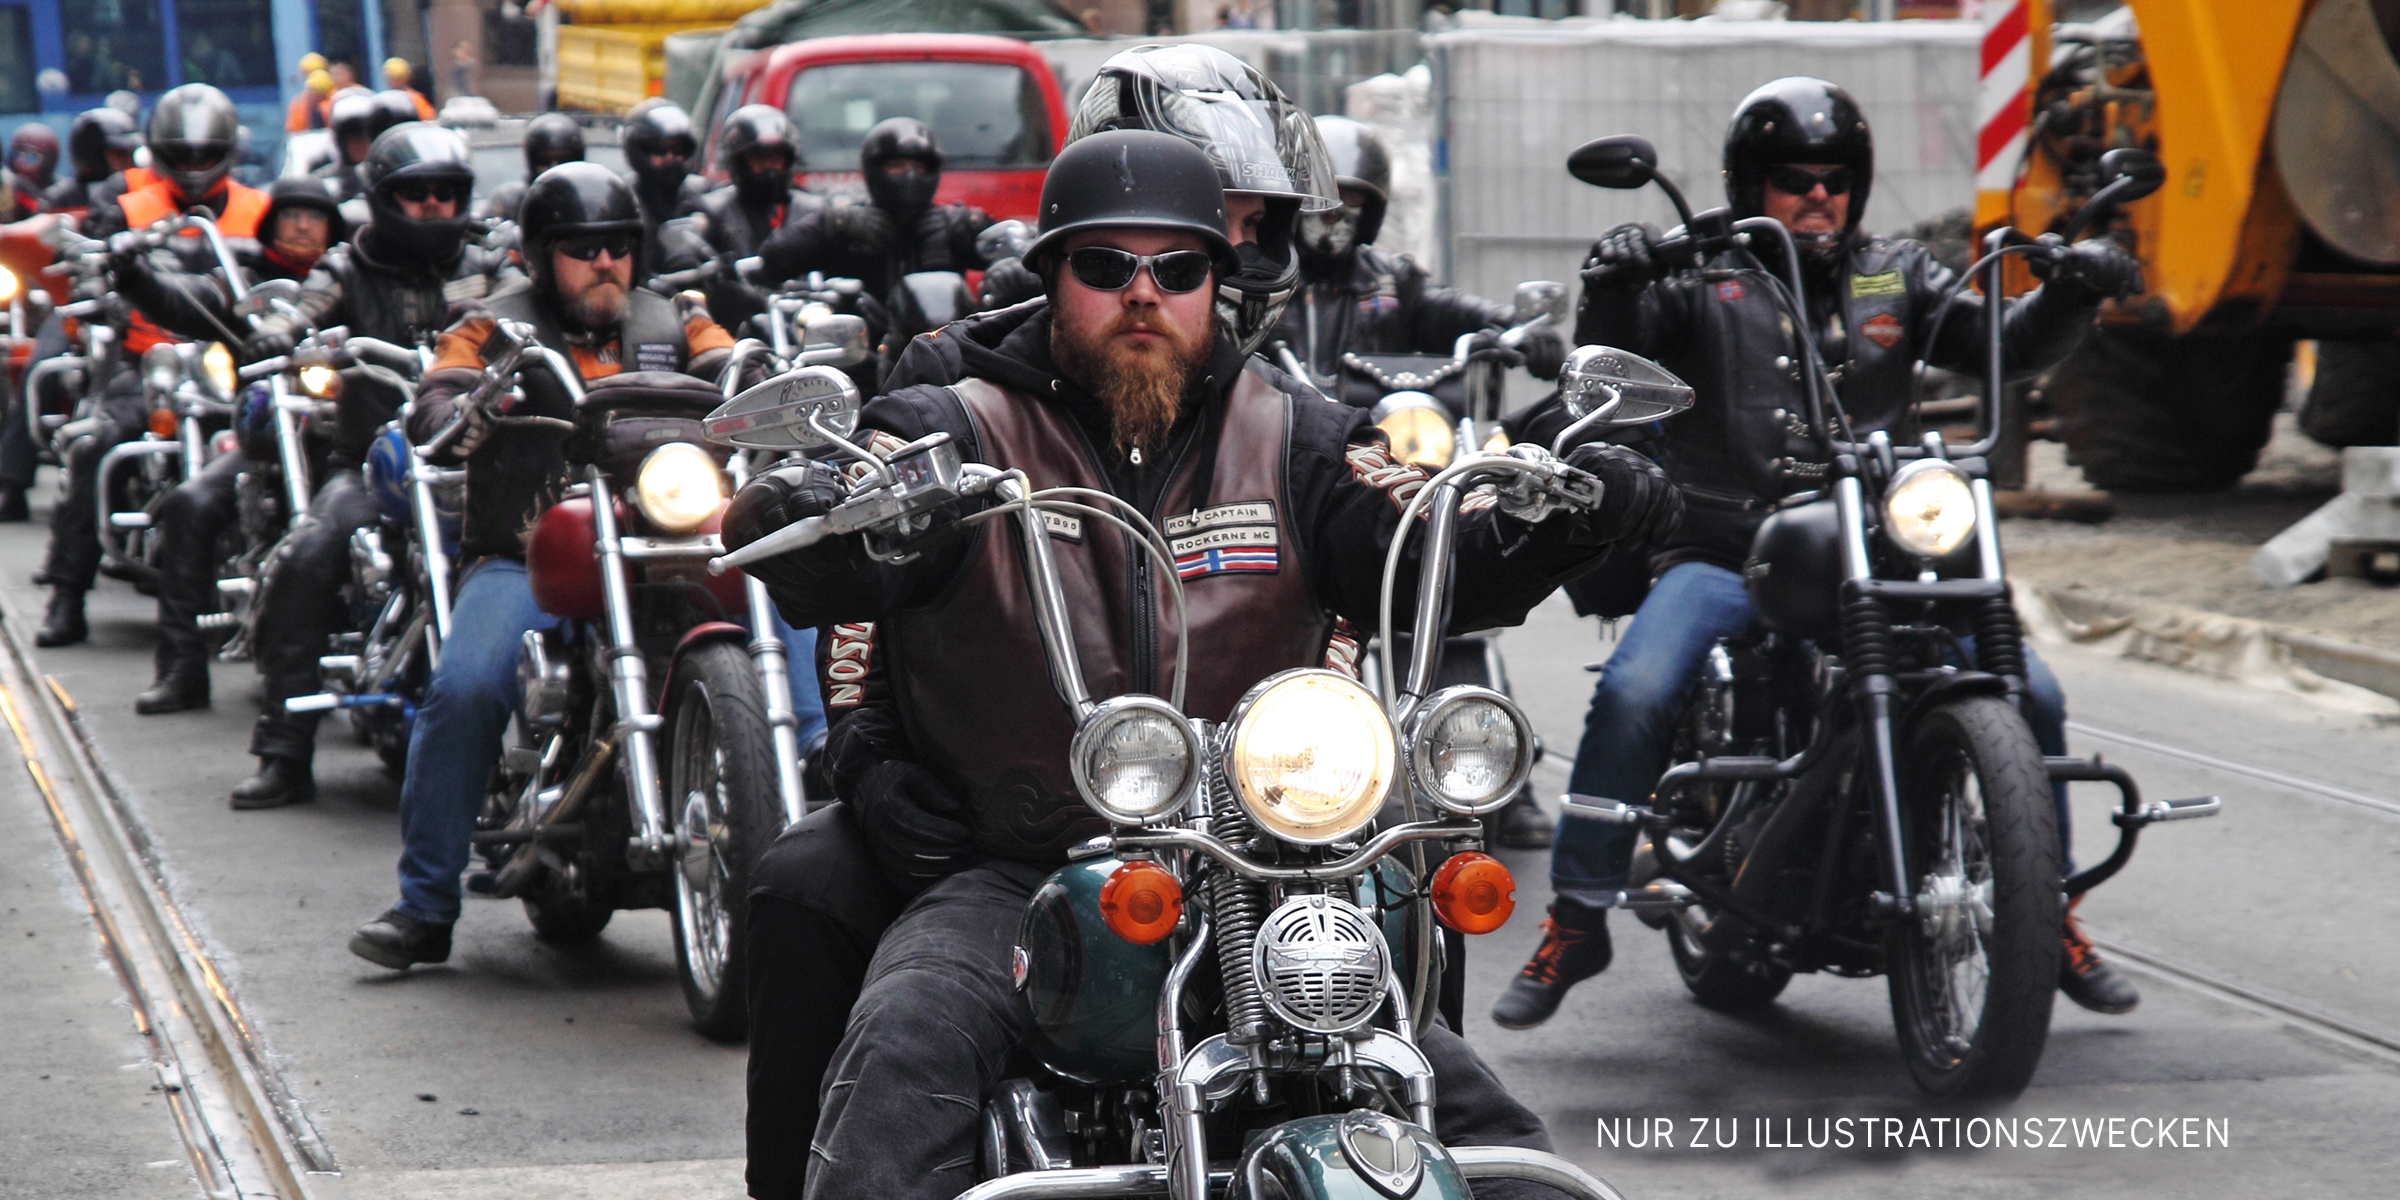 Gruppe von Männern auf Motorrädern auf der Straße. | Quelle: Shutterstock